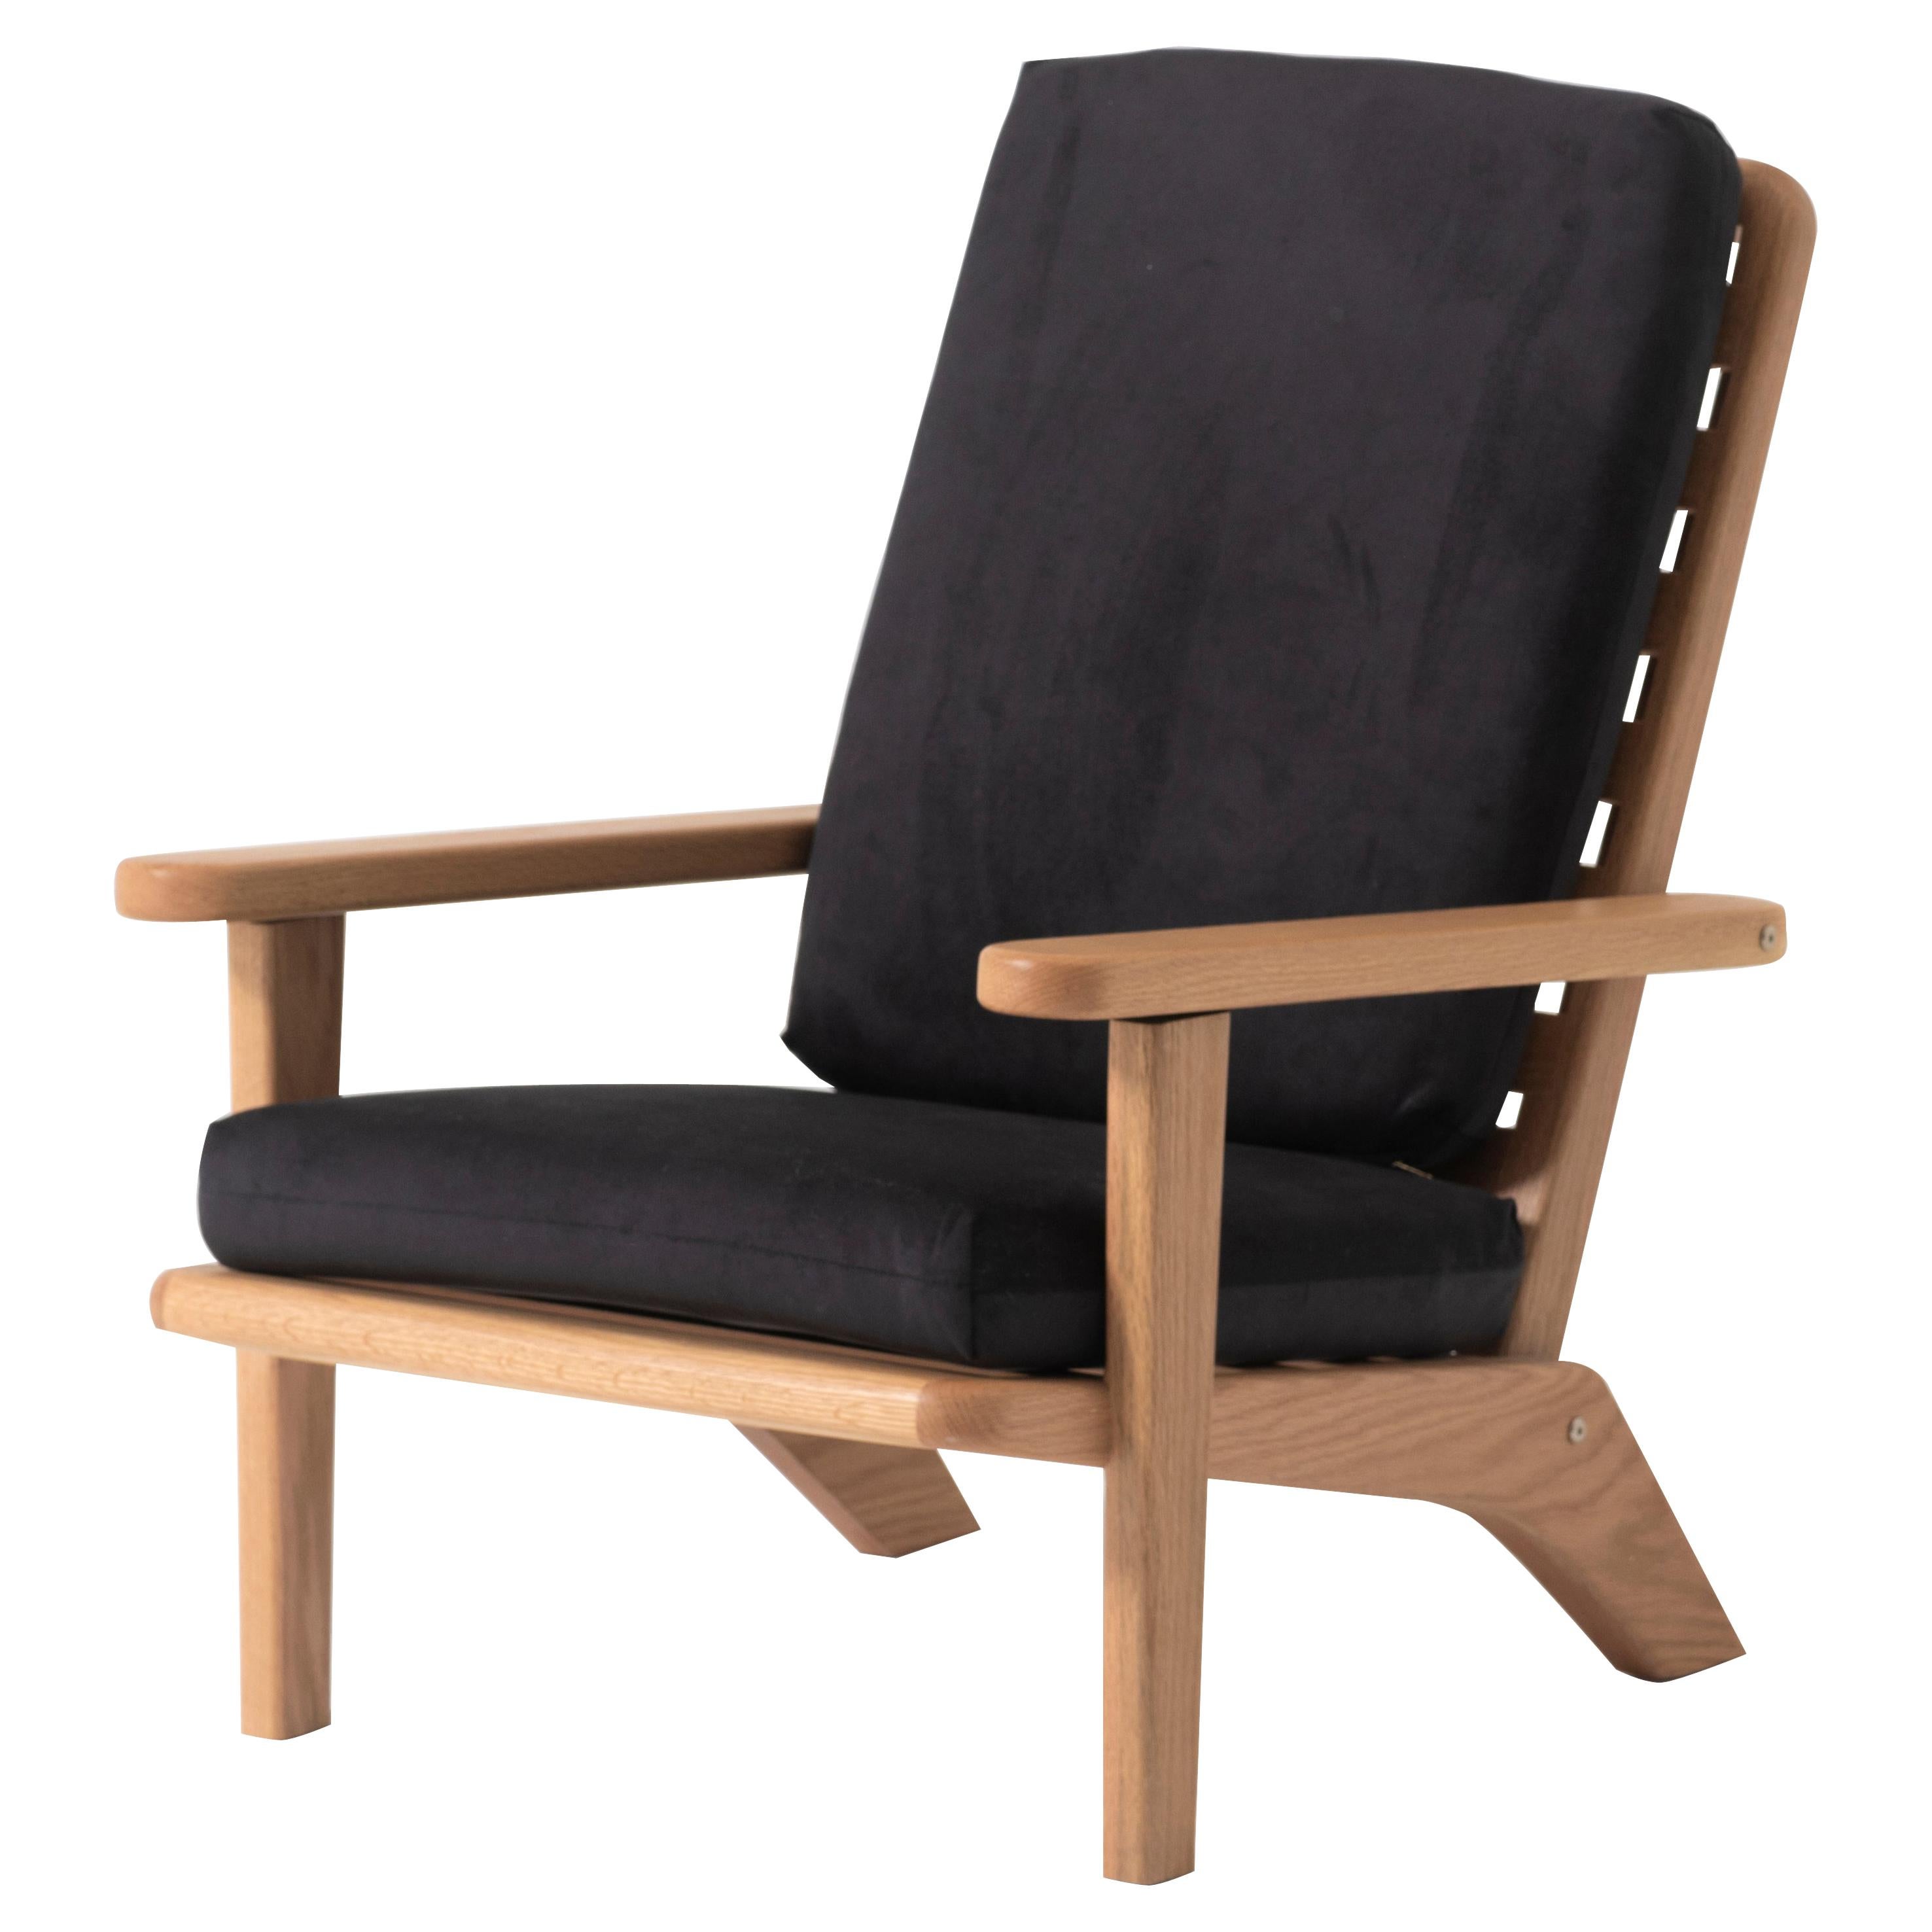 Silla Lounge de madera maciza de roble con cojín textil negro y respaldo reclinable